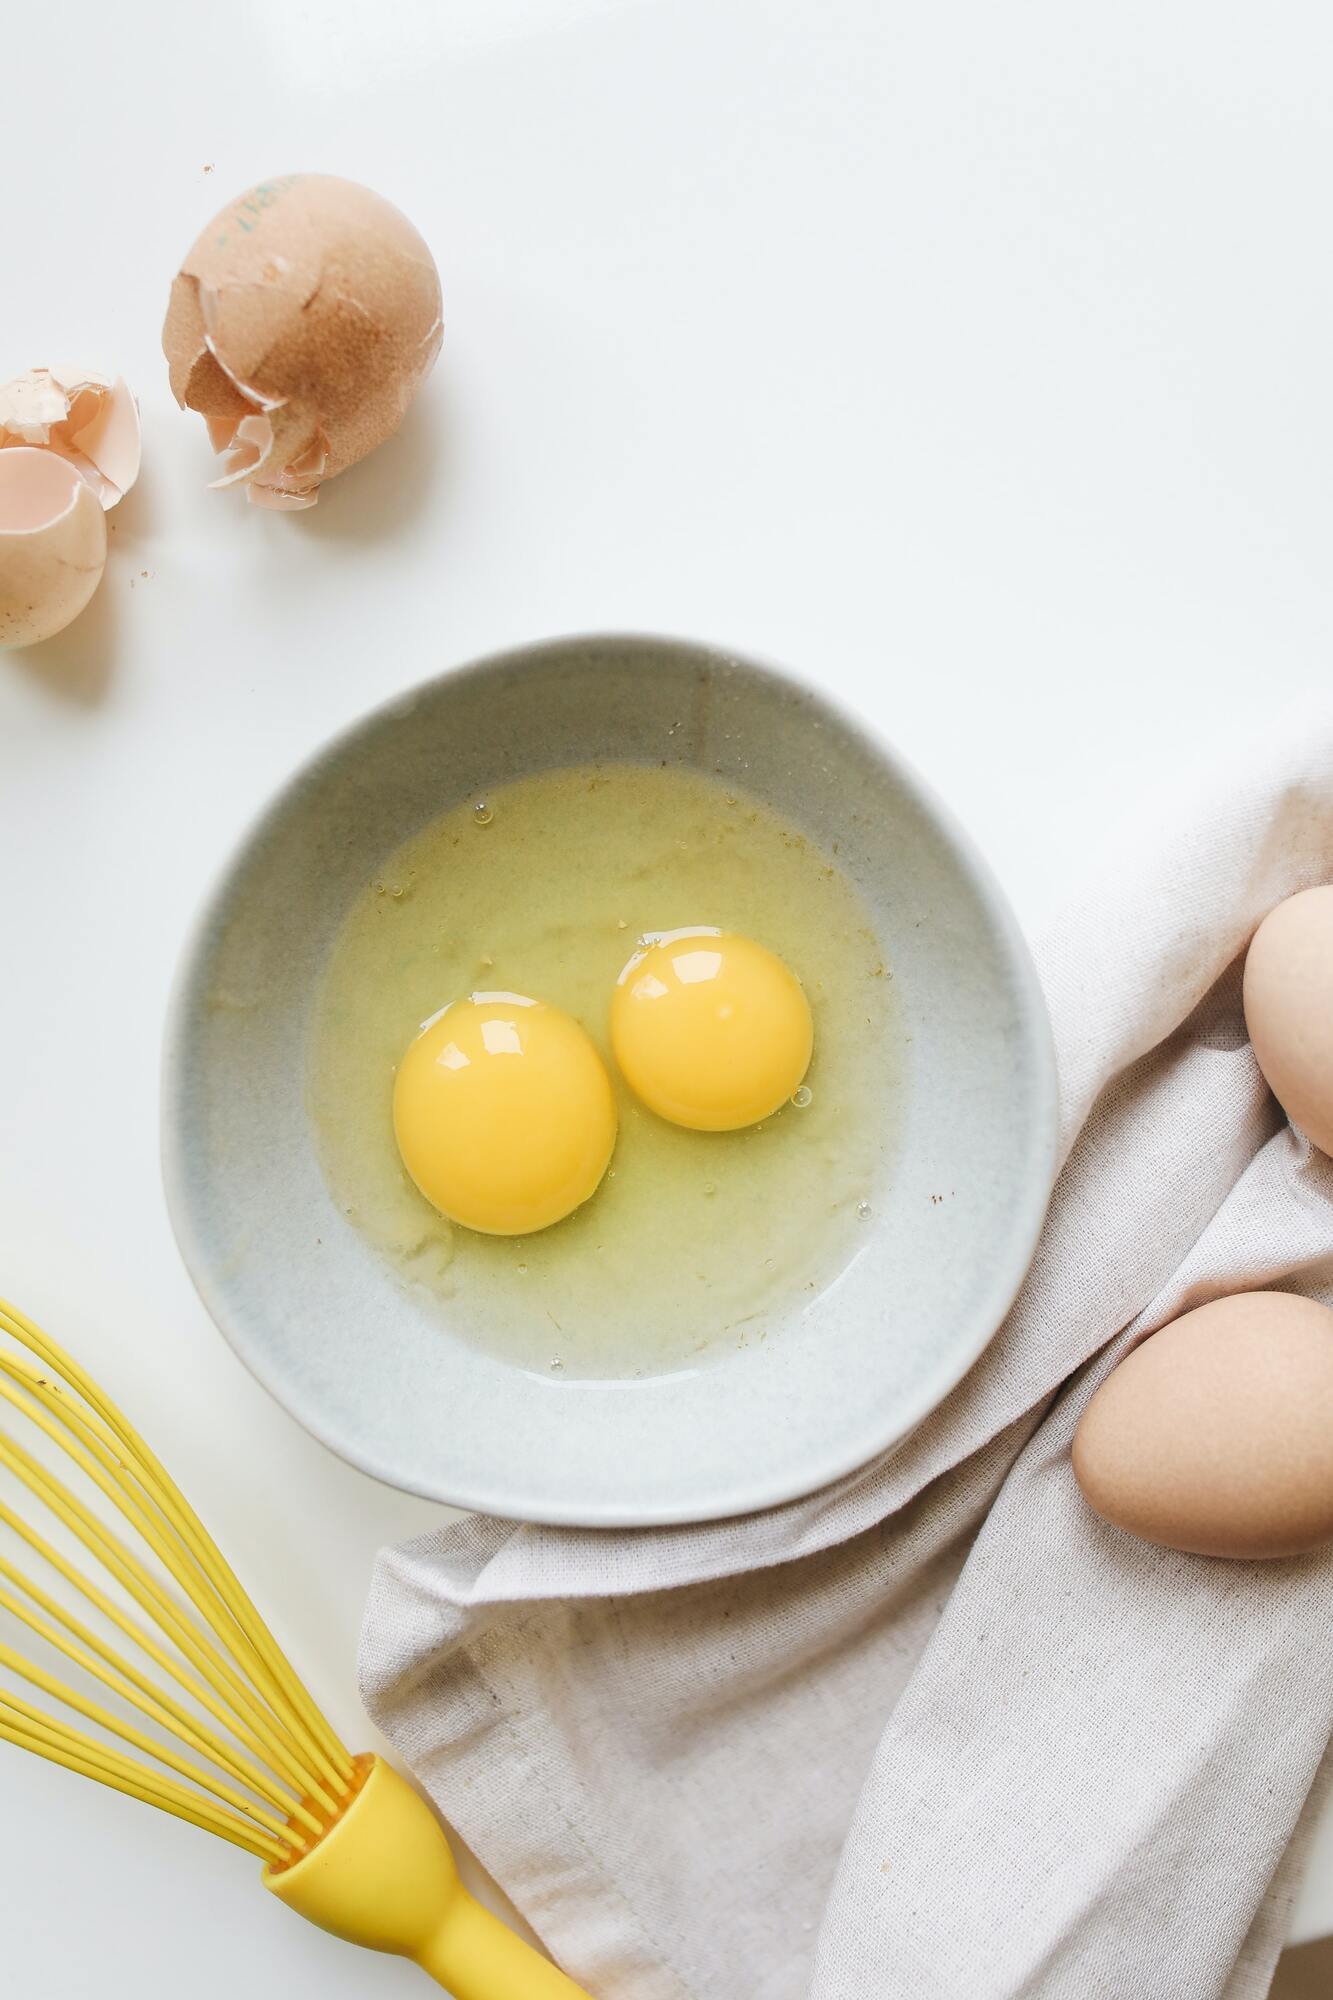 Egg yolks for dough